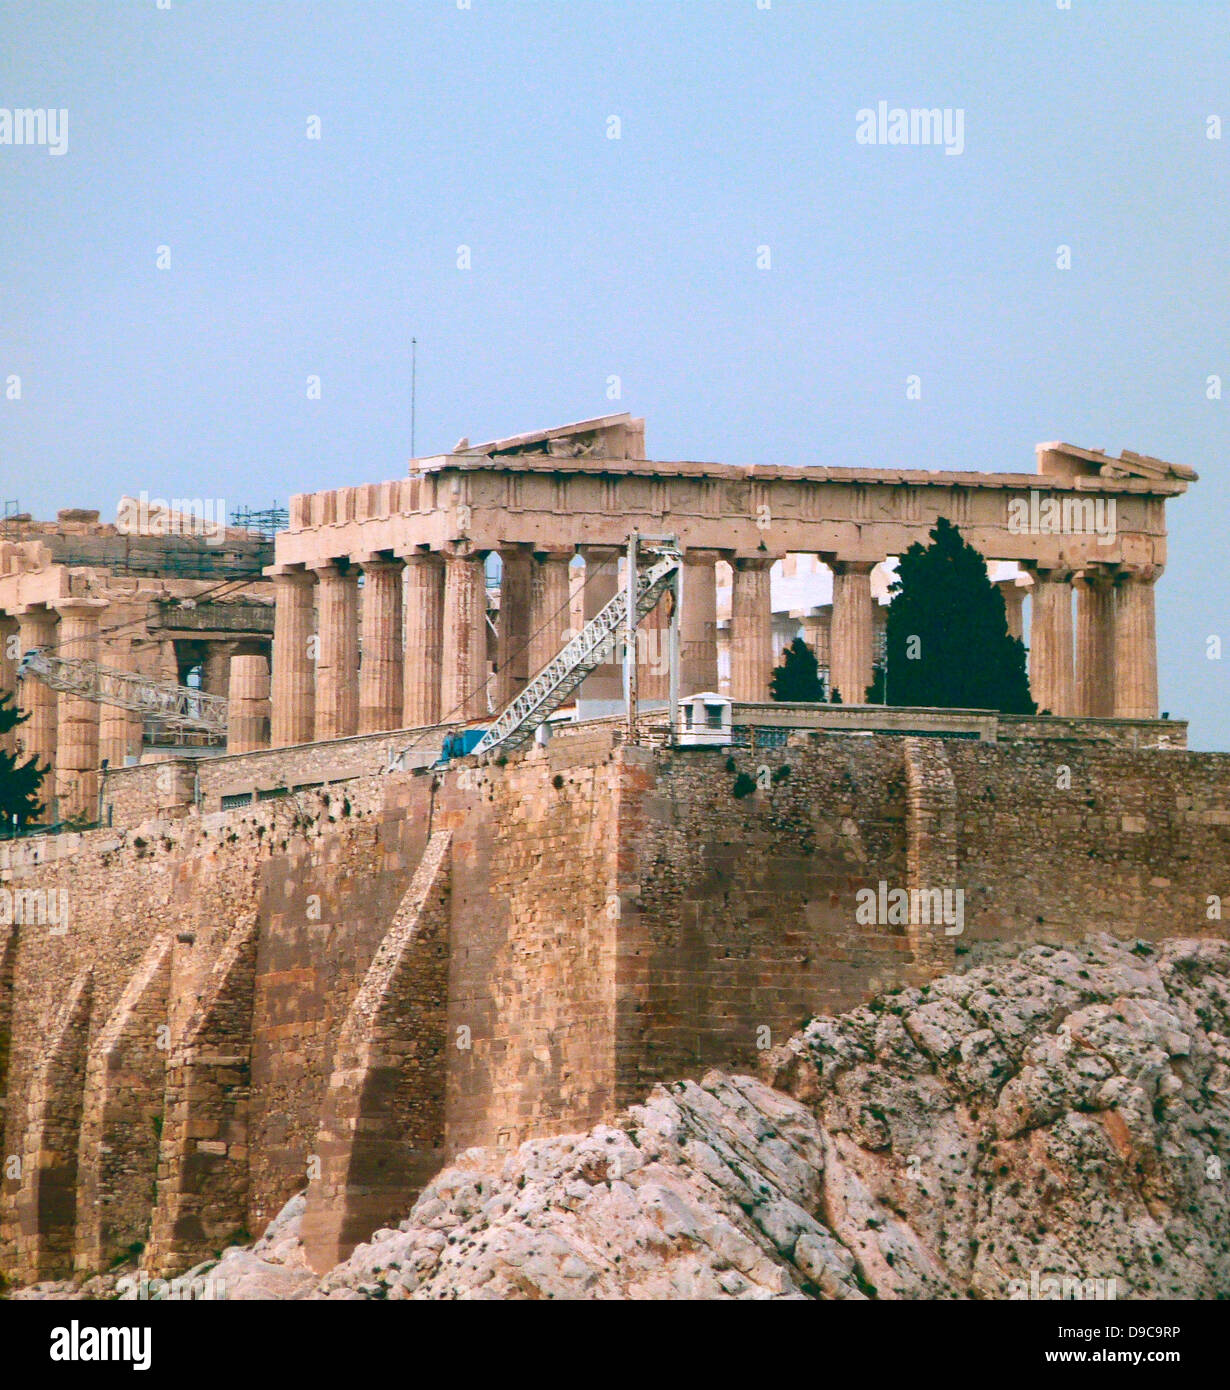 L'Acropoli di Atene è un antica cittadella situata su un alto sperone roccioso sopra la città di Atene e contenente i resti di numerosi edifici antichi di grande architettura e significato storico, il più celebre è il Partenone. Foto Stock